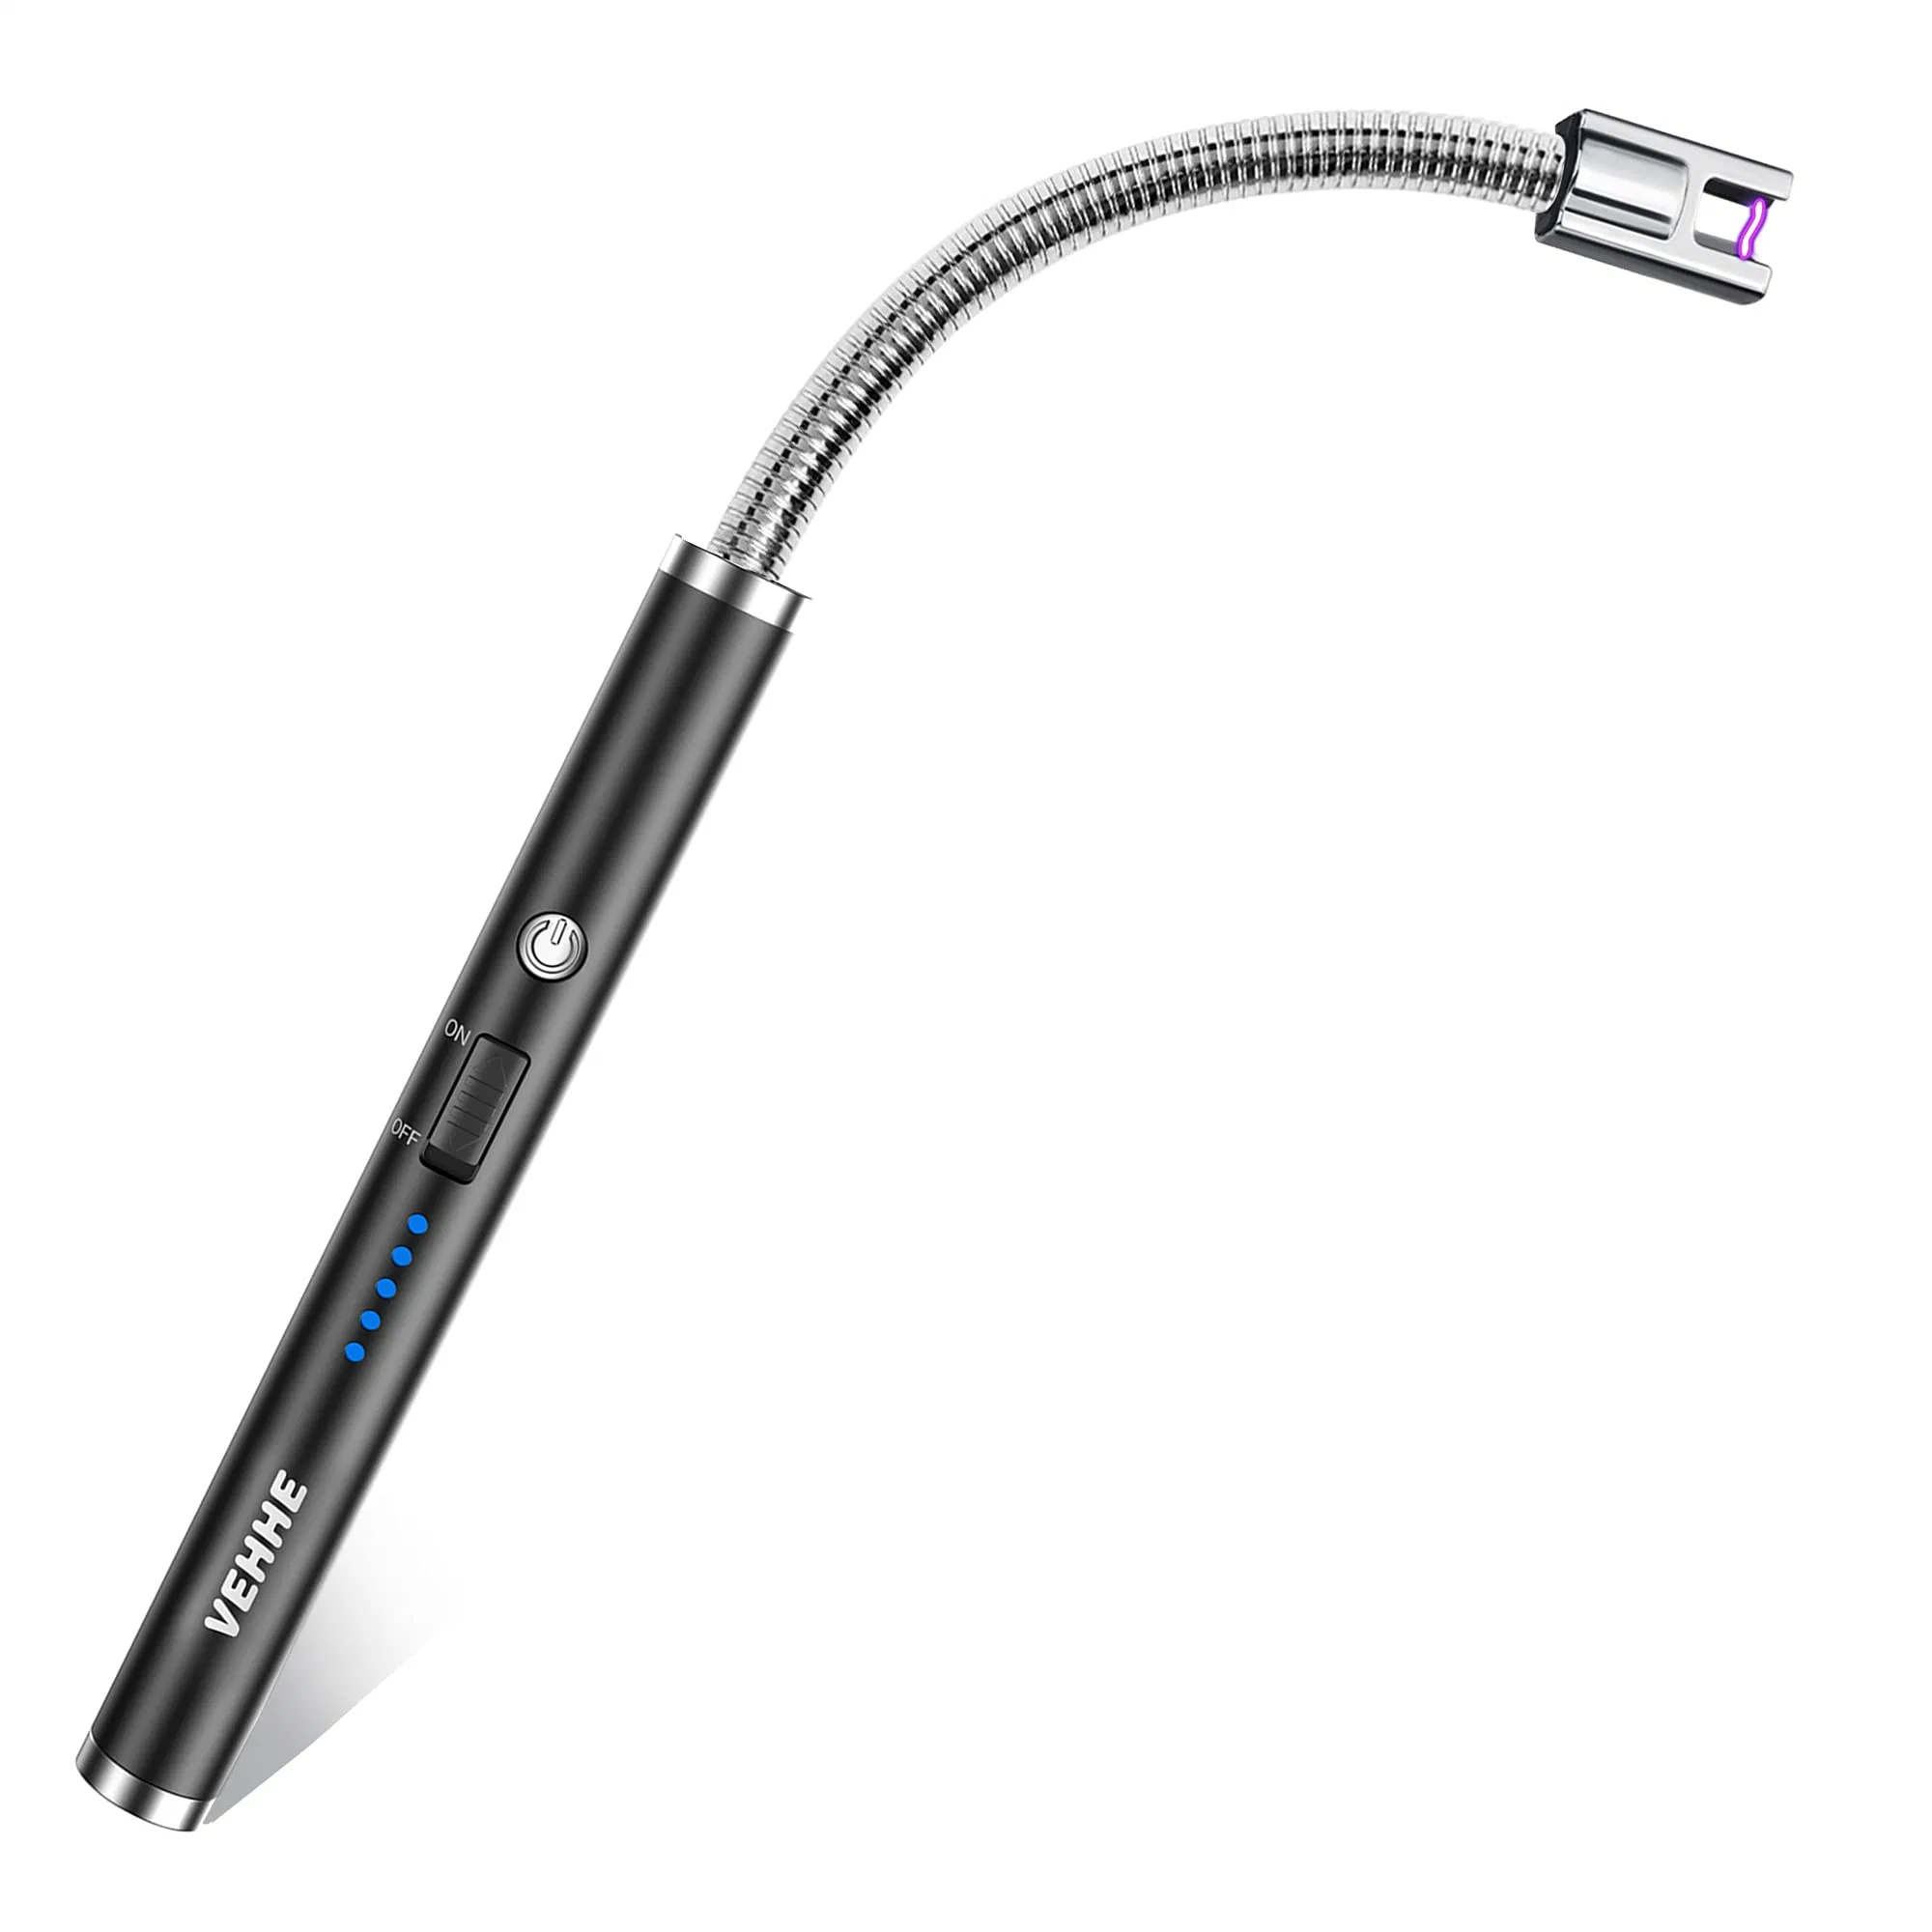 Encendedor de vela, eléctrico recargable Luz de arco con LED batería Display largo cuello flexible USB encendedor para velas ligeras Estufas de gas Camping Barbacoa